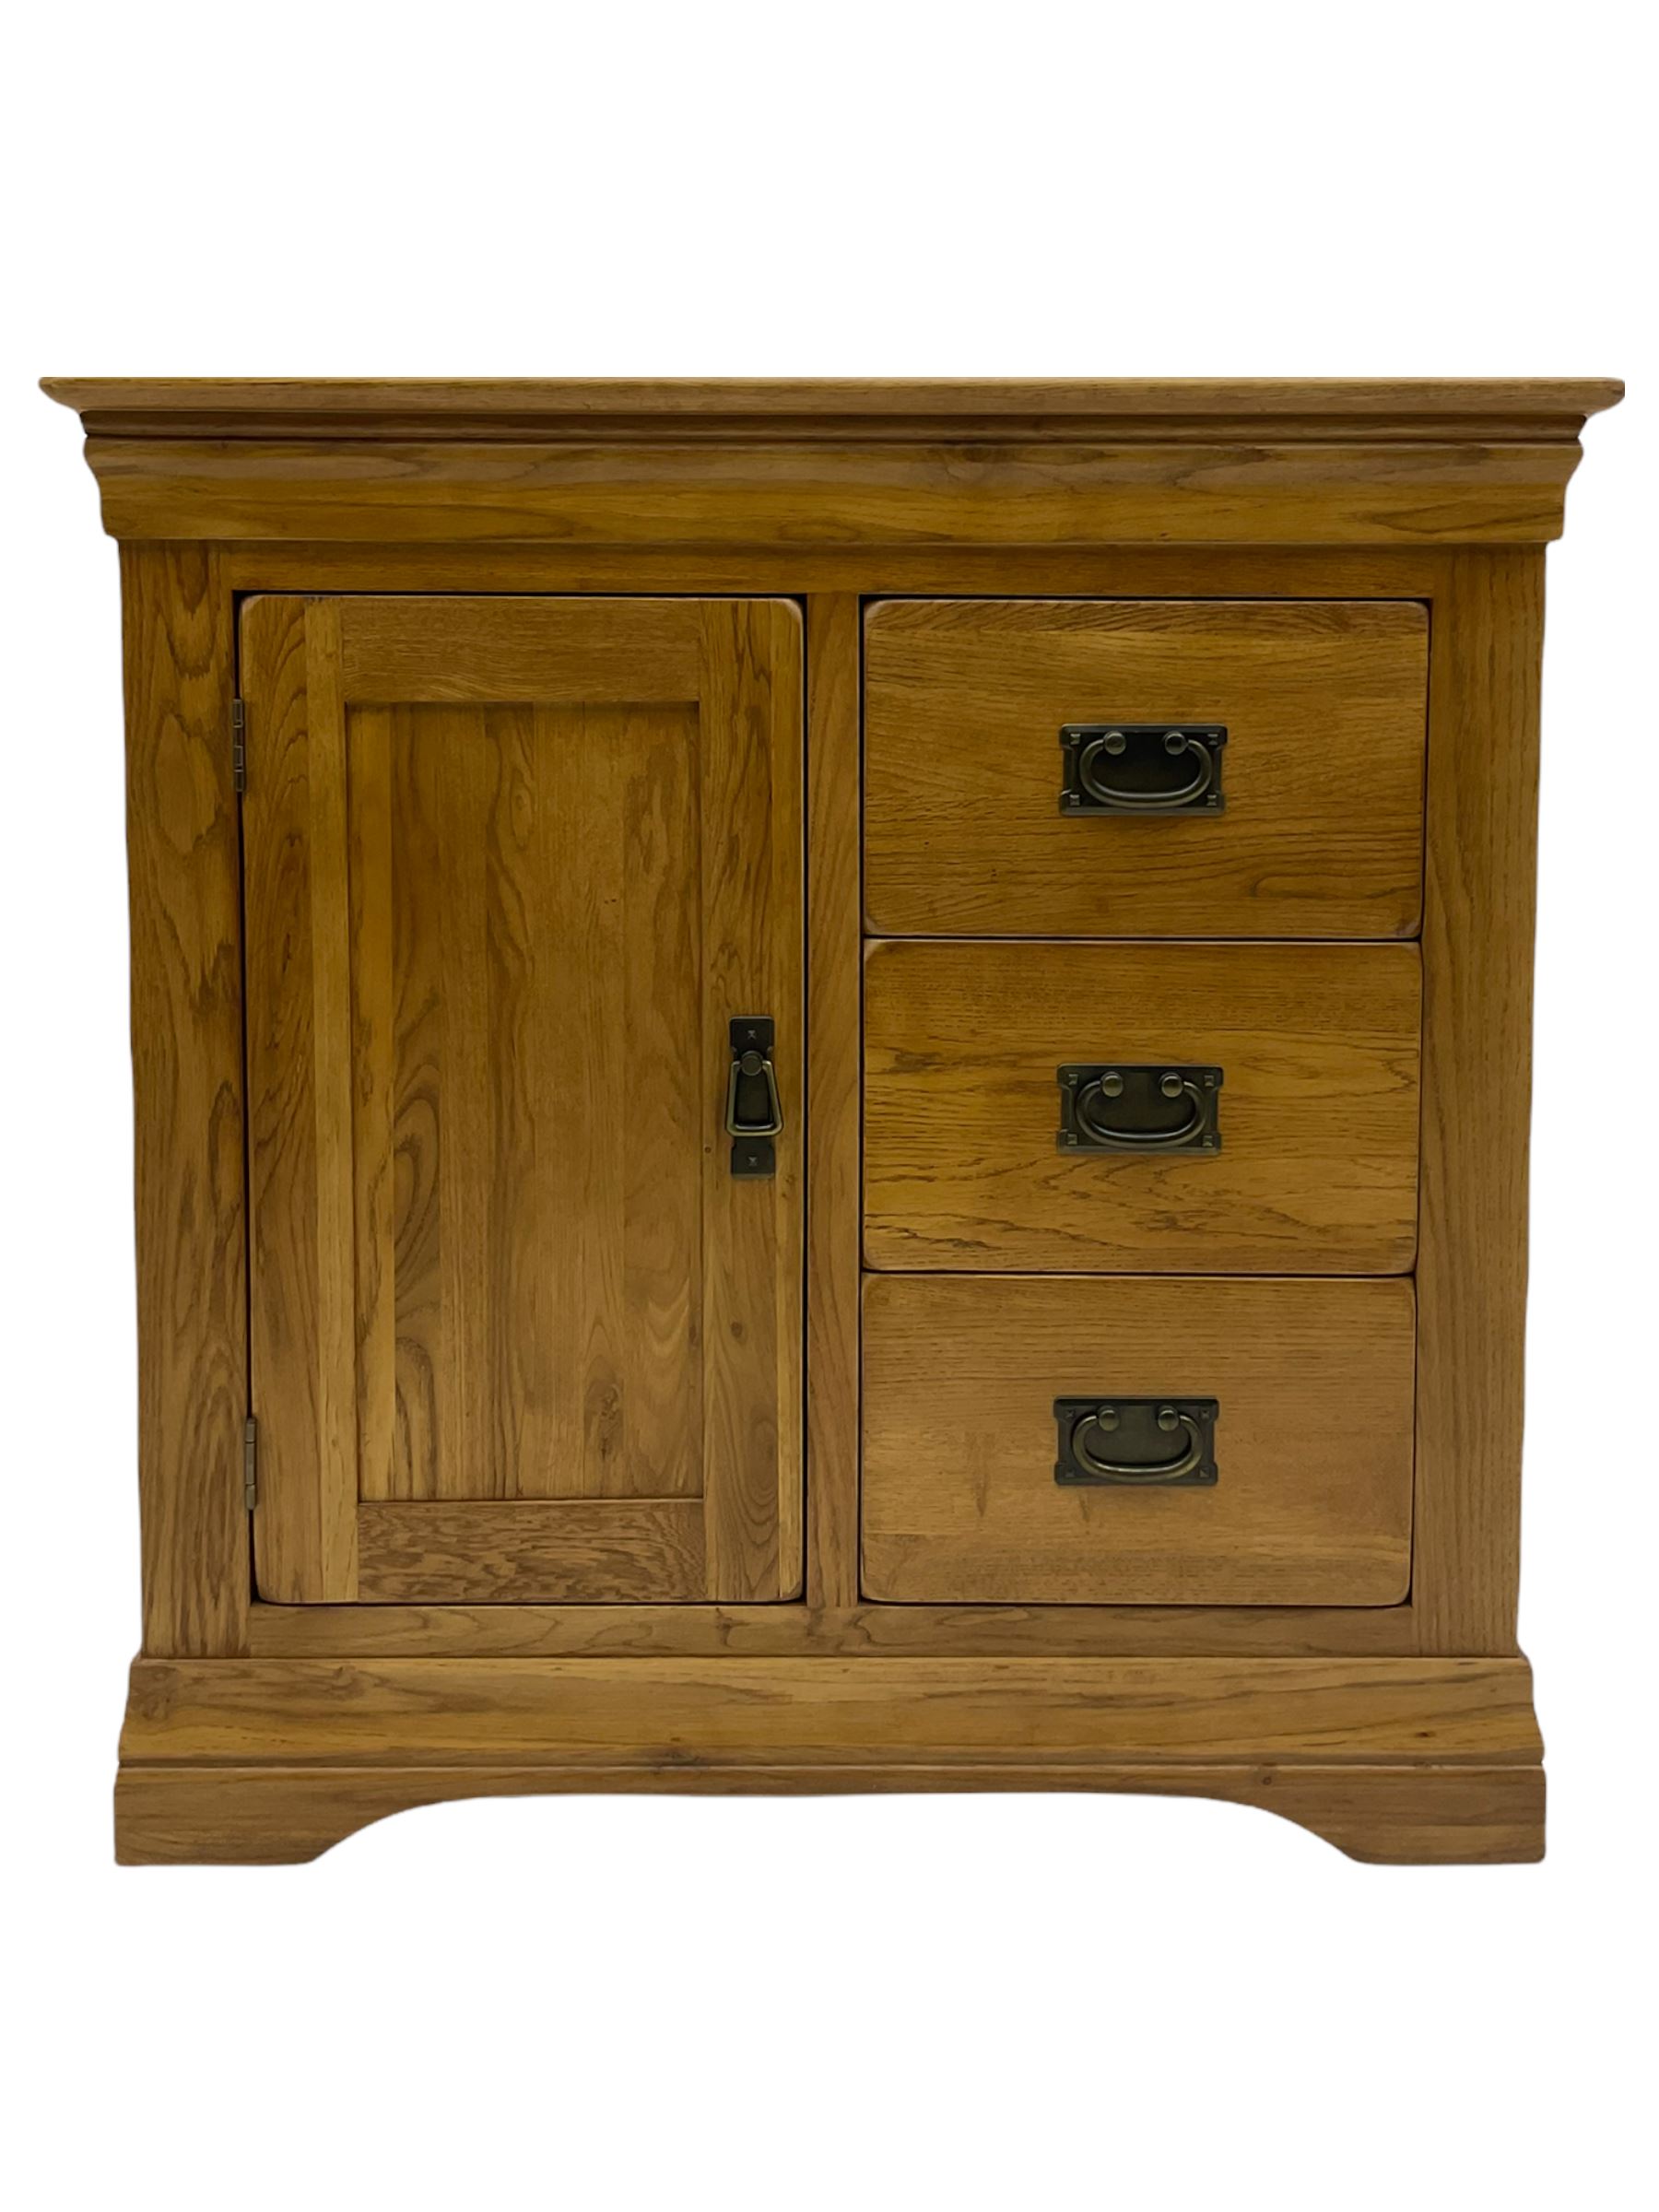 Oak side cabinet